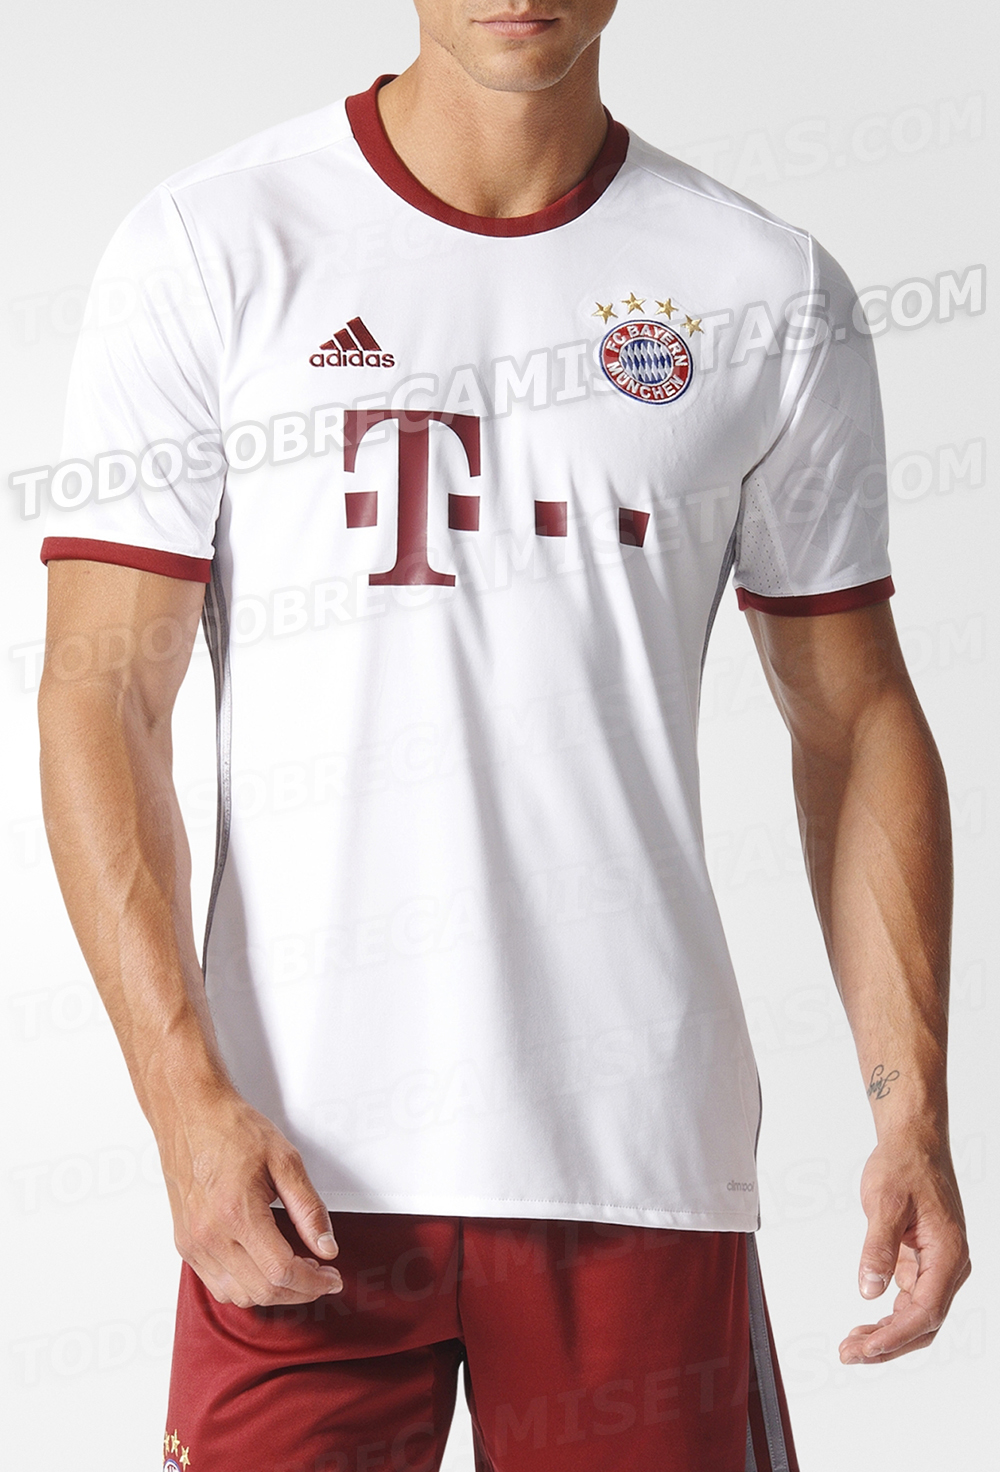 Bayern Munich 2016-17 adidas third kit LEAKED